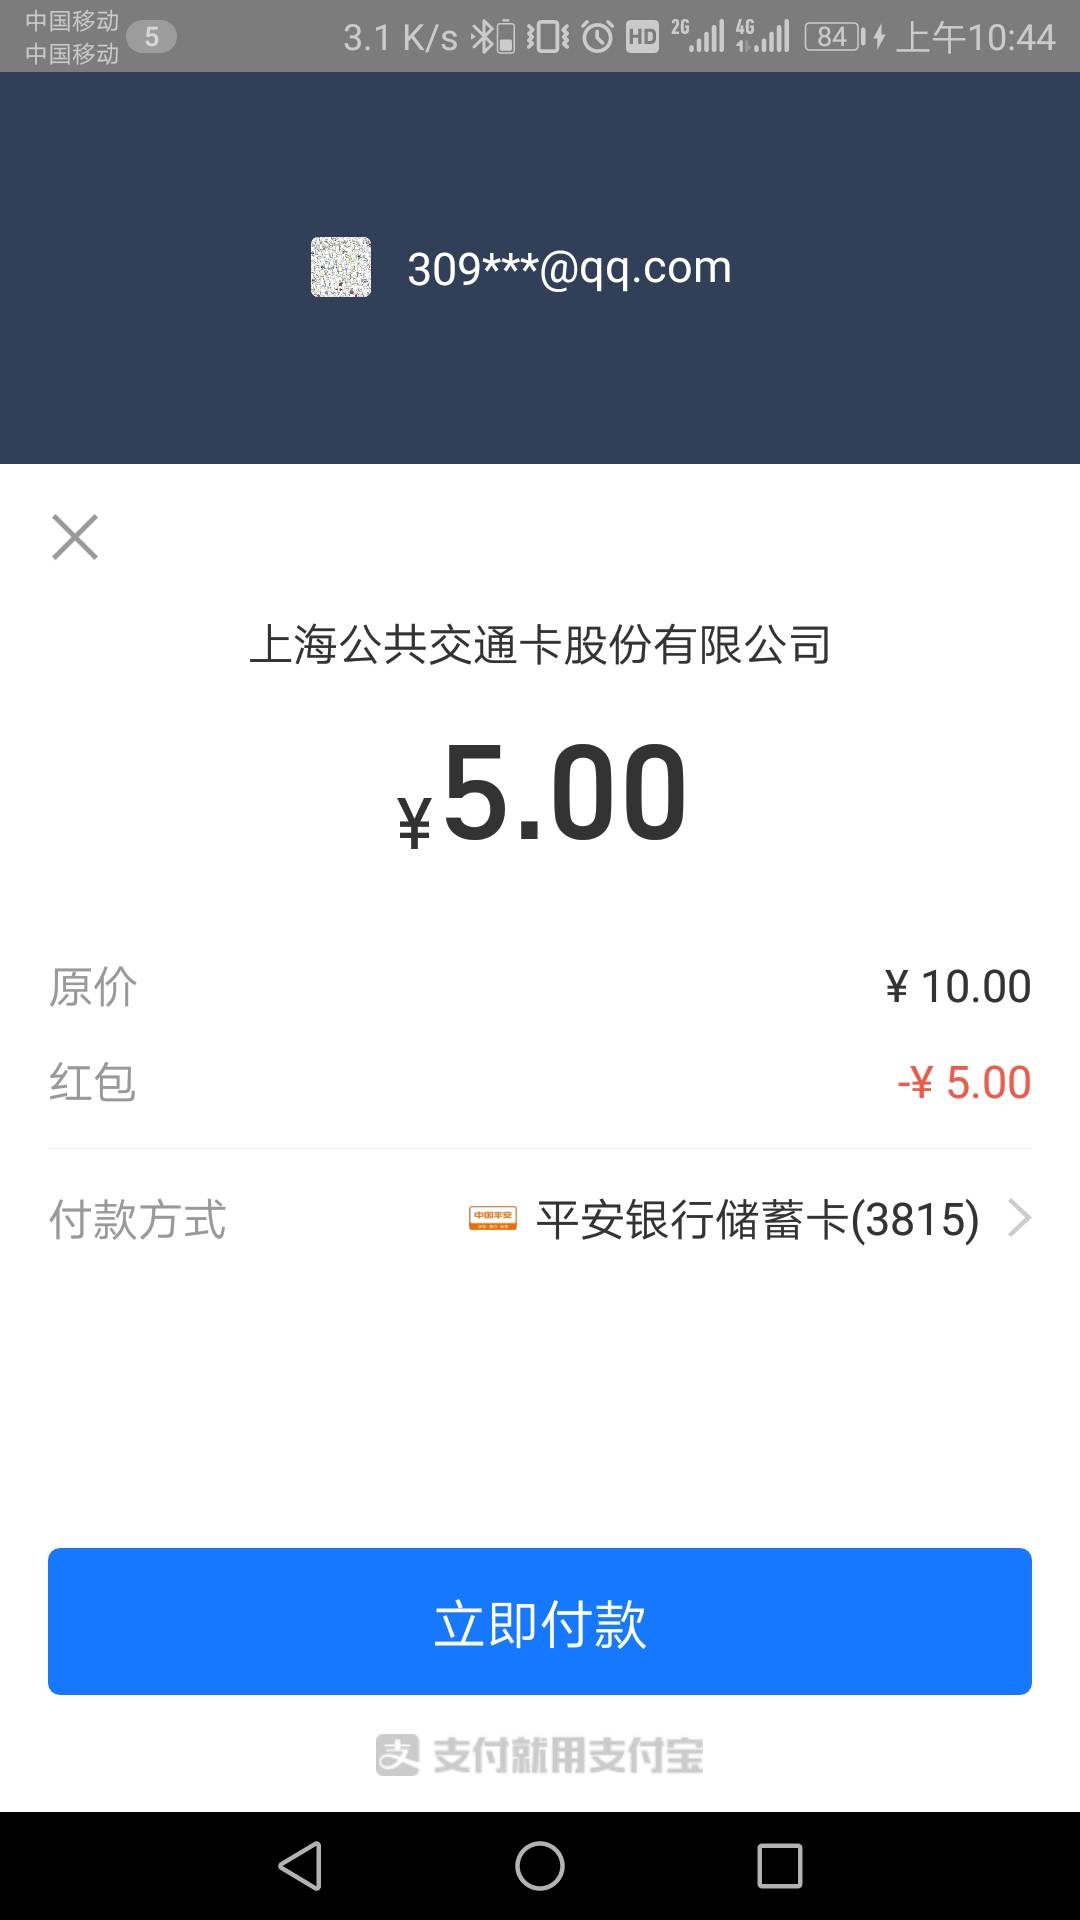 平安口袋银行app一键绑定支付宝有五元立减金用上海交通卡app充值就